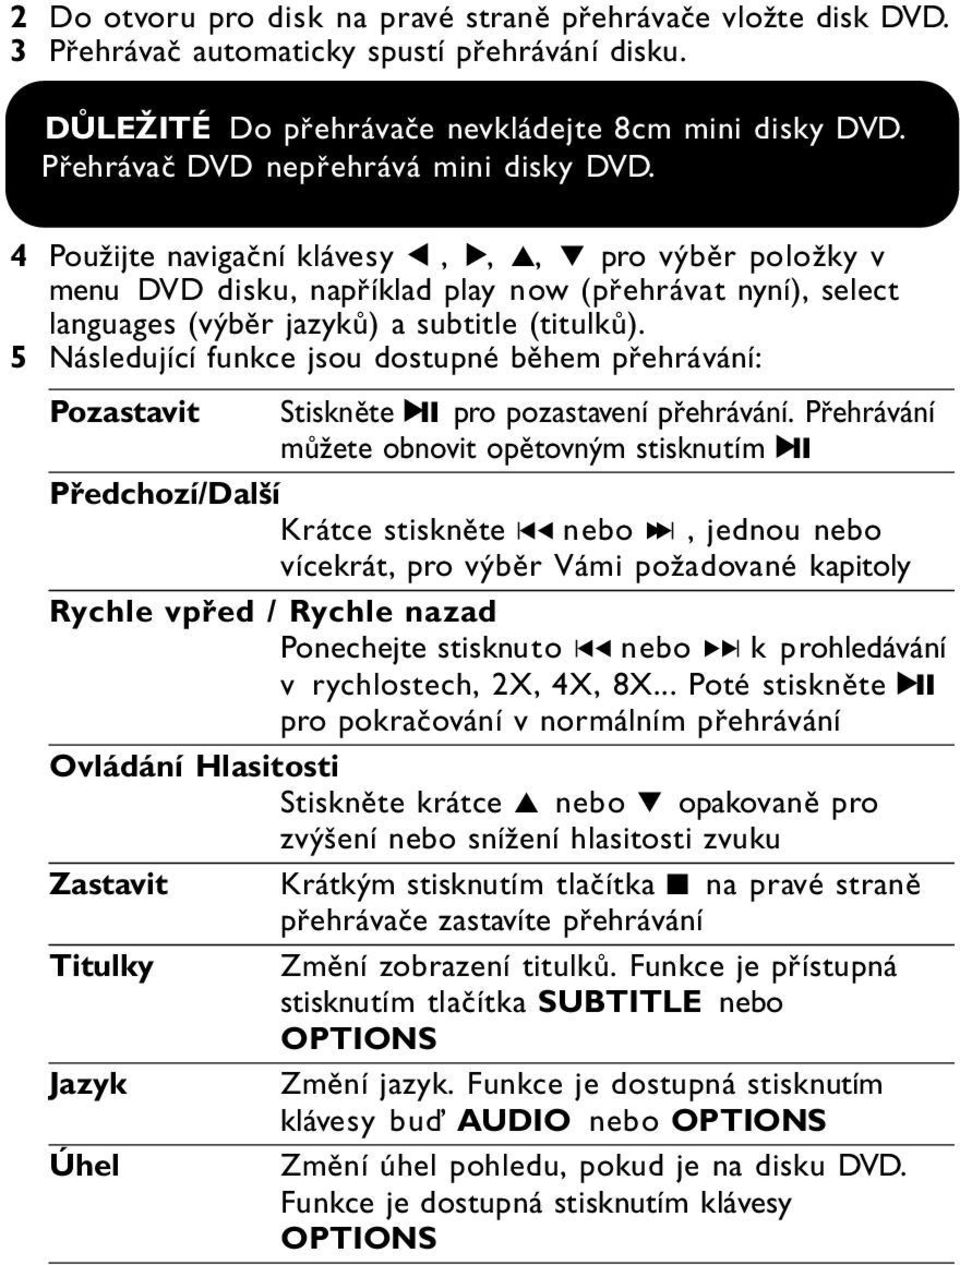 4 Použijte navigační klávesy 1, 2, 3, 4 pro výběr položky v menu DVD disku, například play now (přehrávat nyní), select languages (výběr jazyků) a subtitle (titulků).